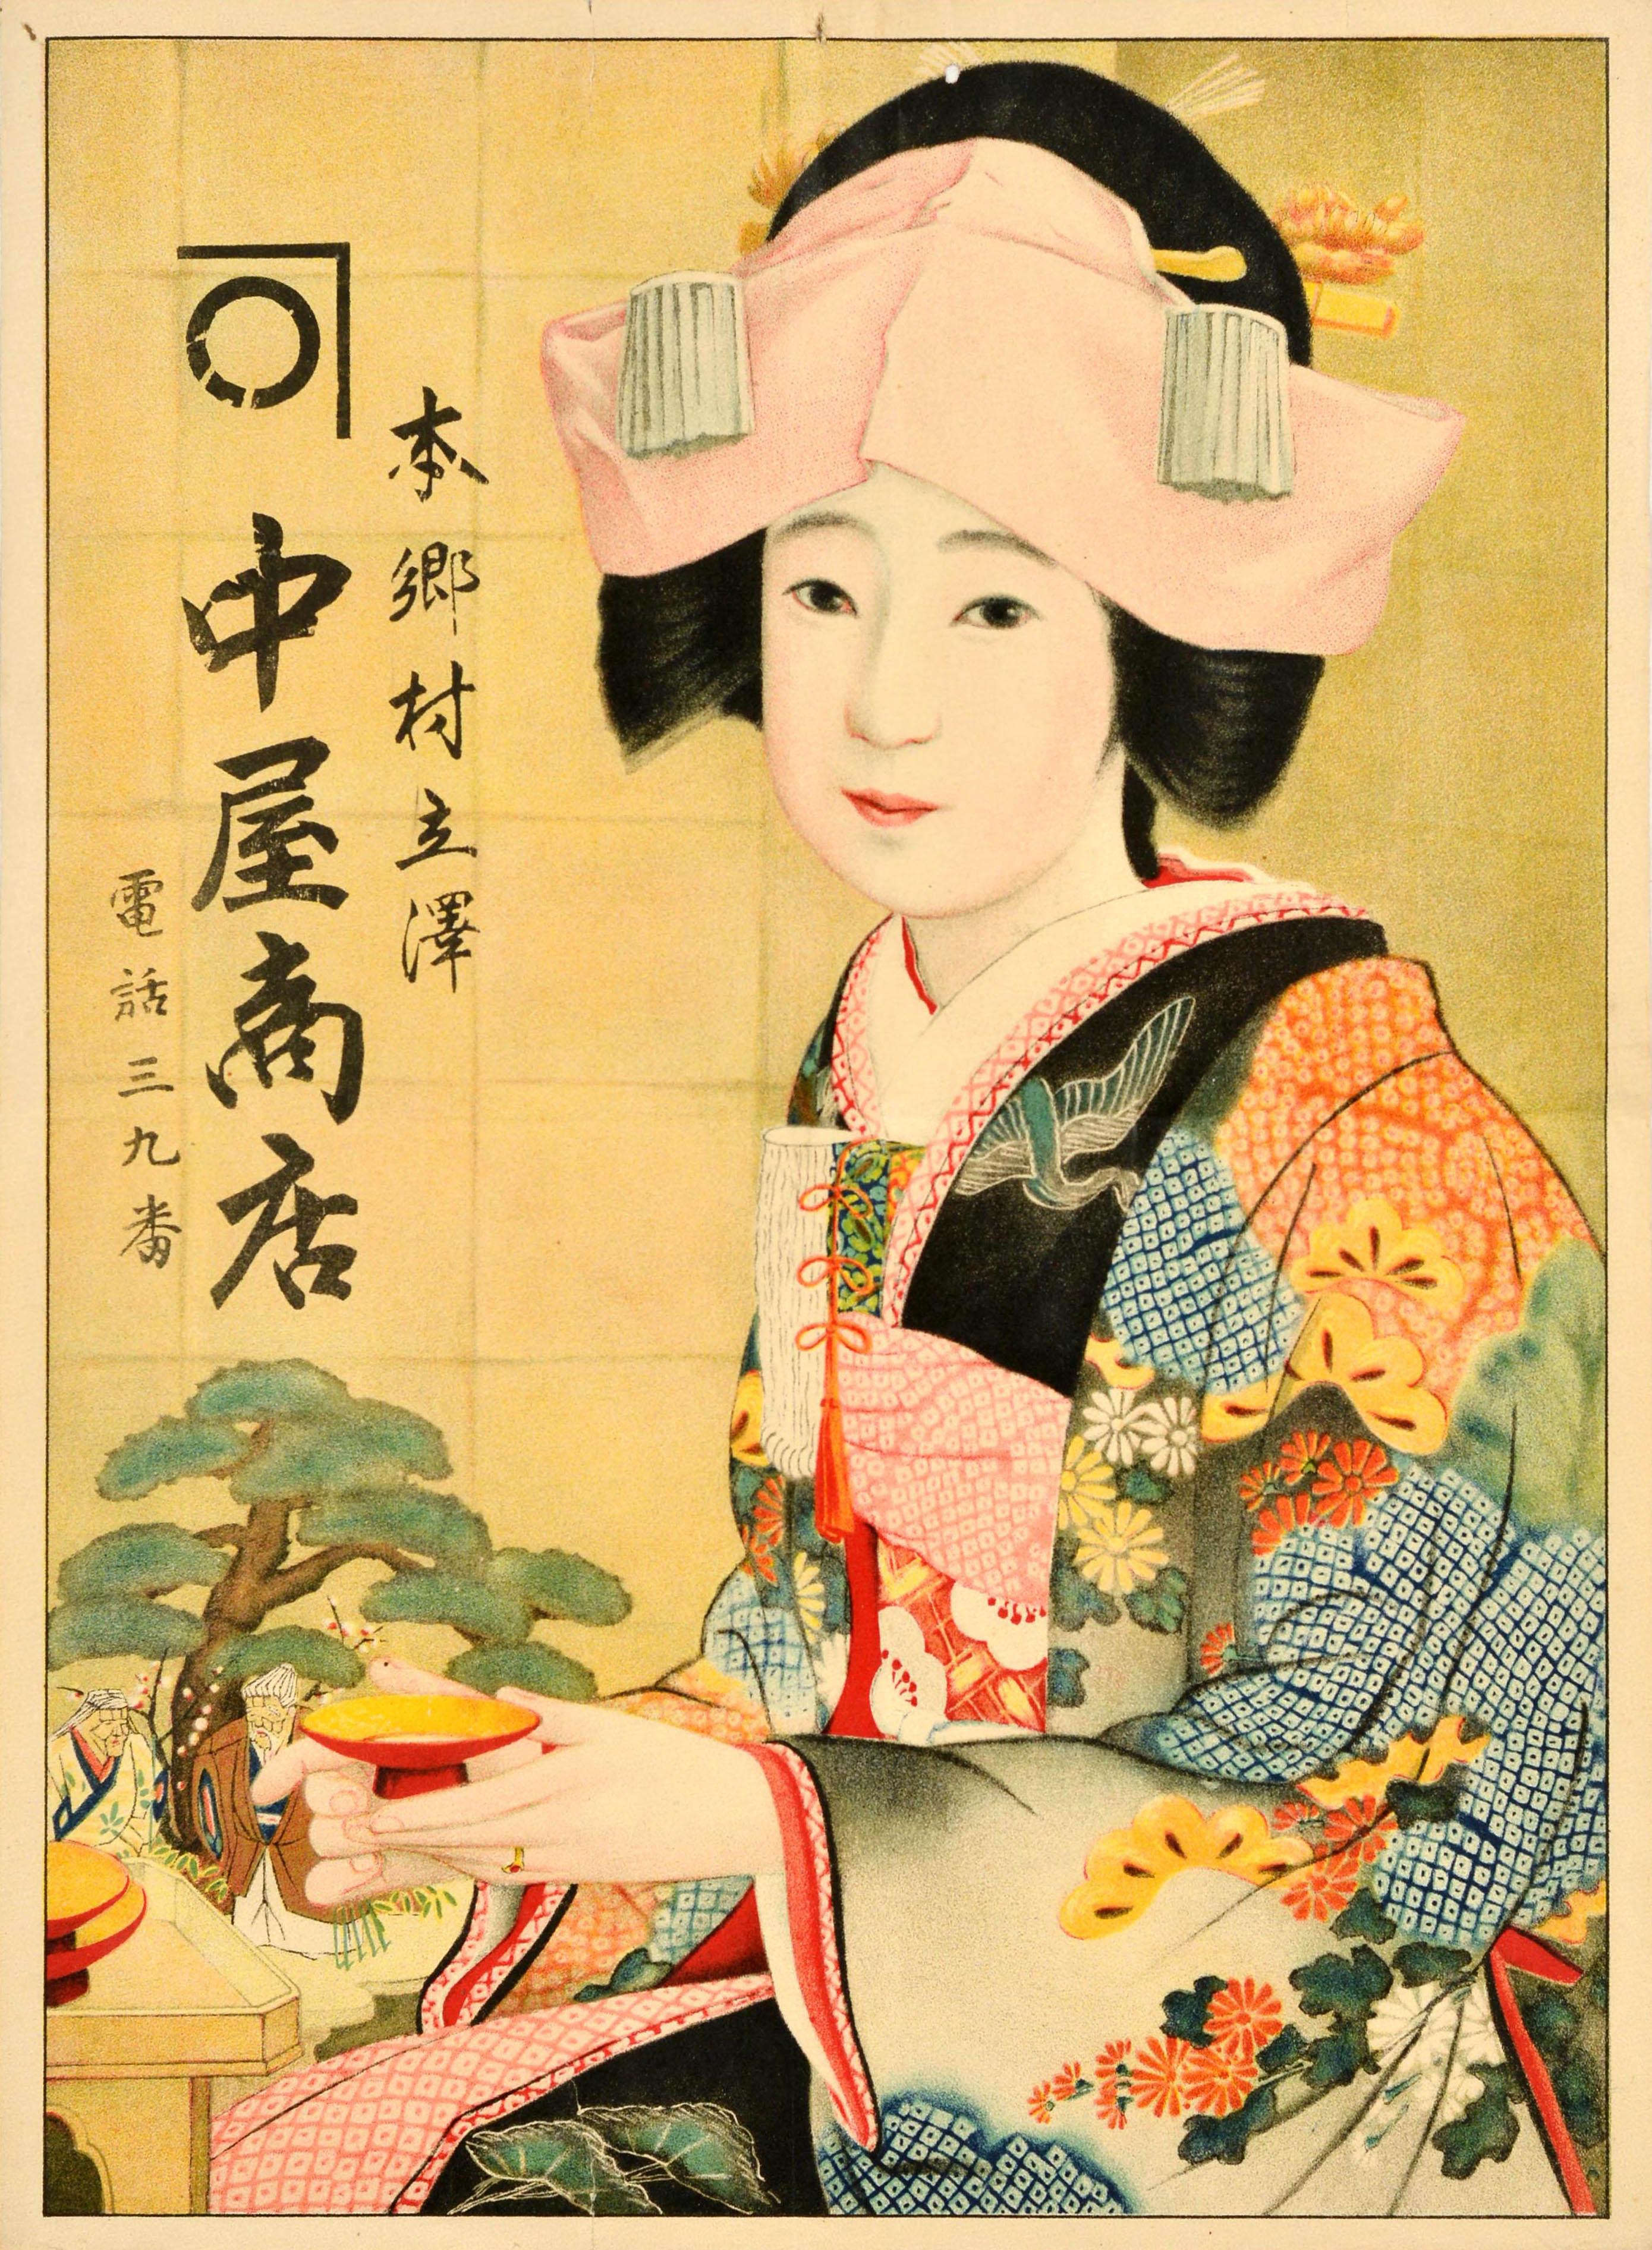 Unknown Print - Original Vintage Advertising Poster Hongo Village Tachisawa Kanakaya Store Japan